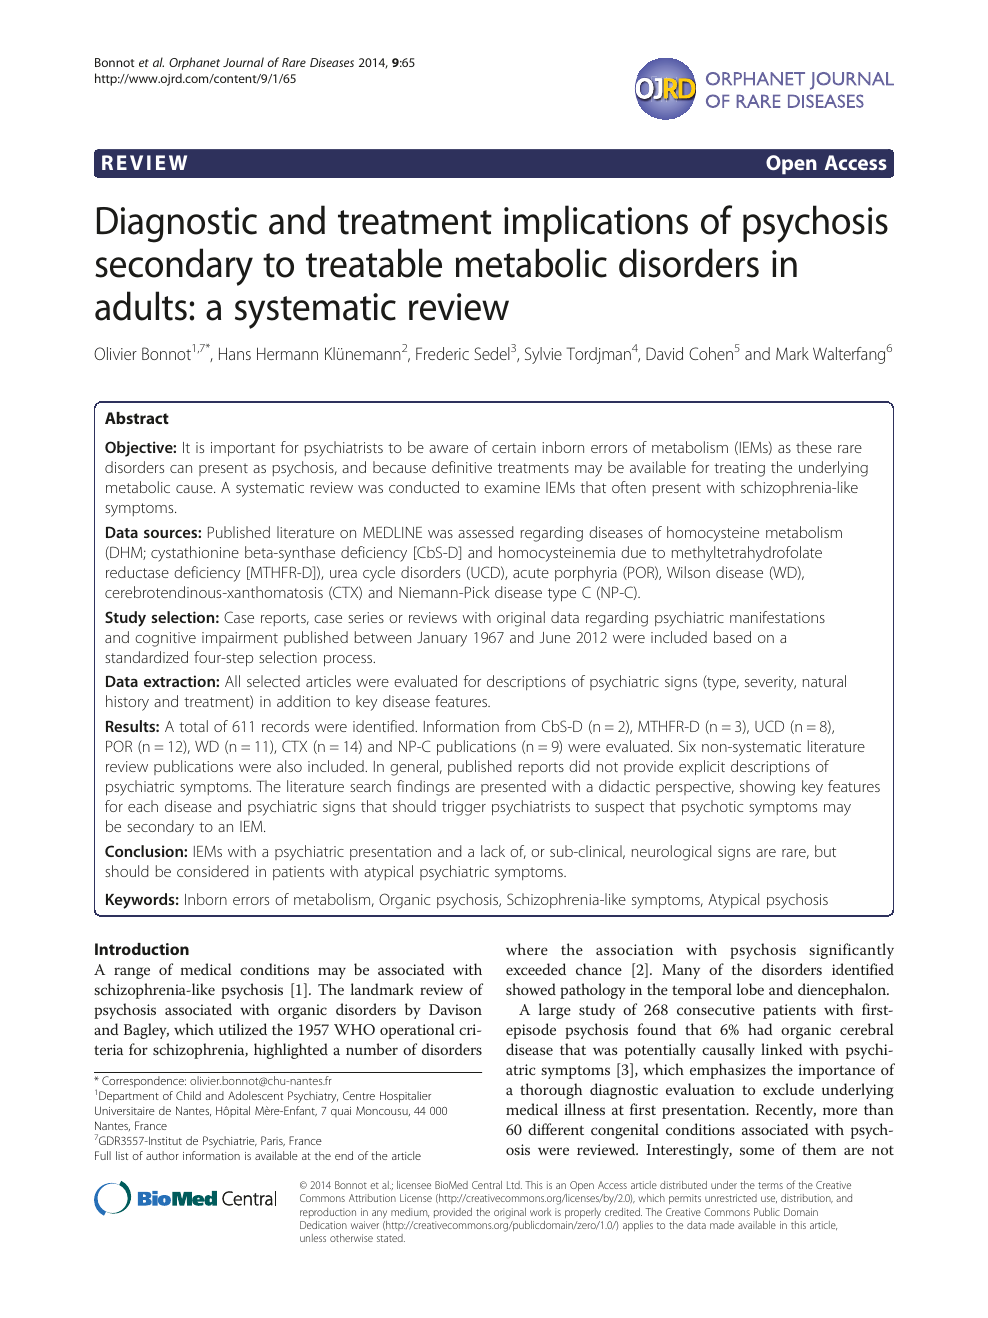 Adult onset Niemann-Pick disease type C presenting with psychosis